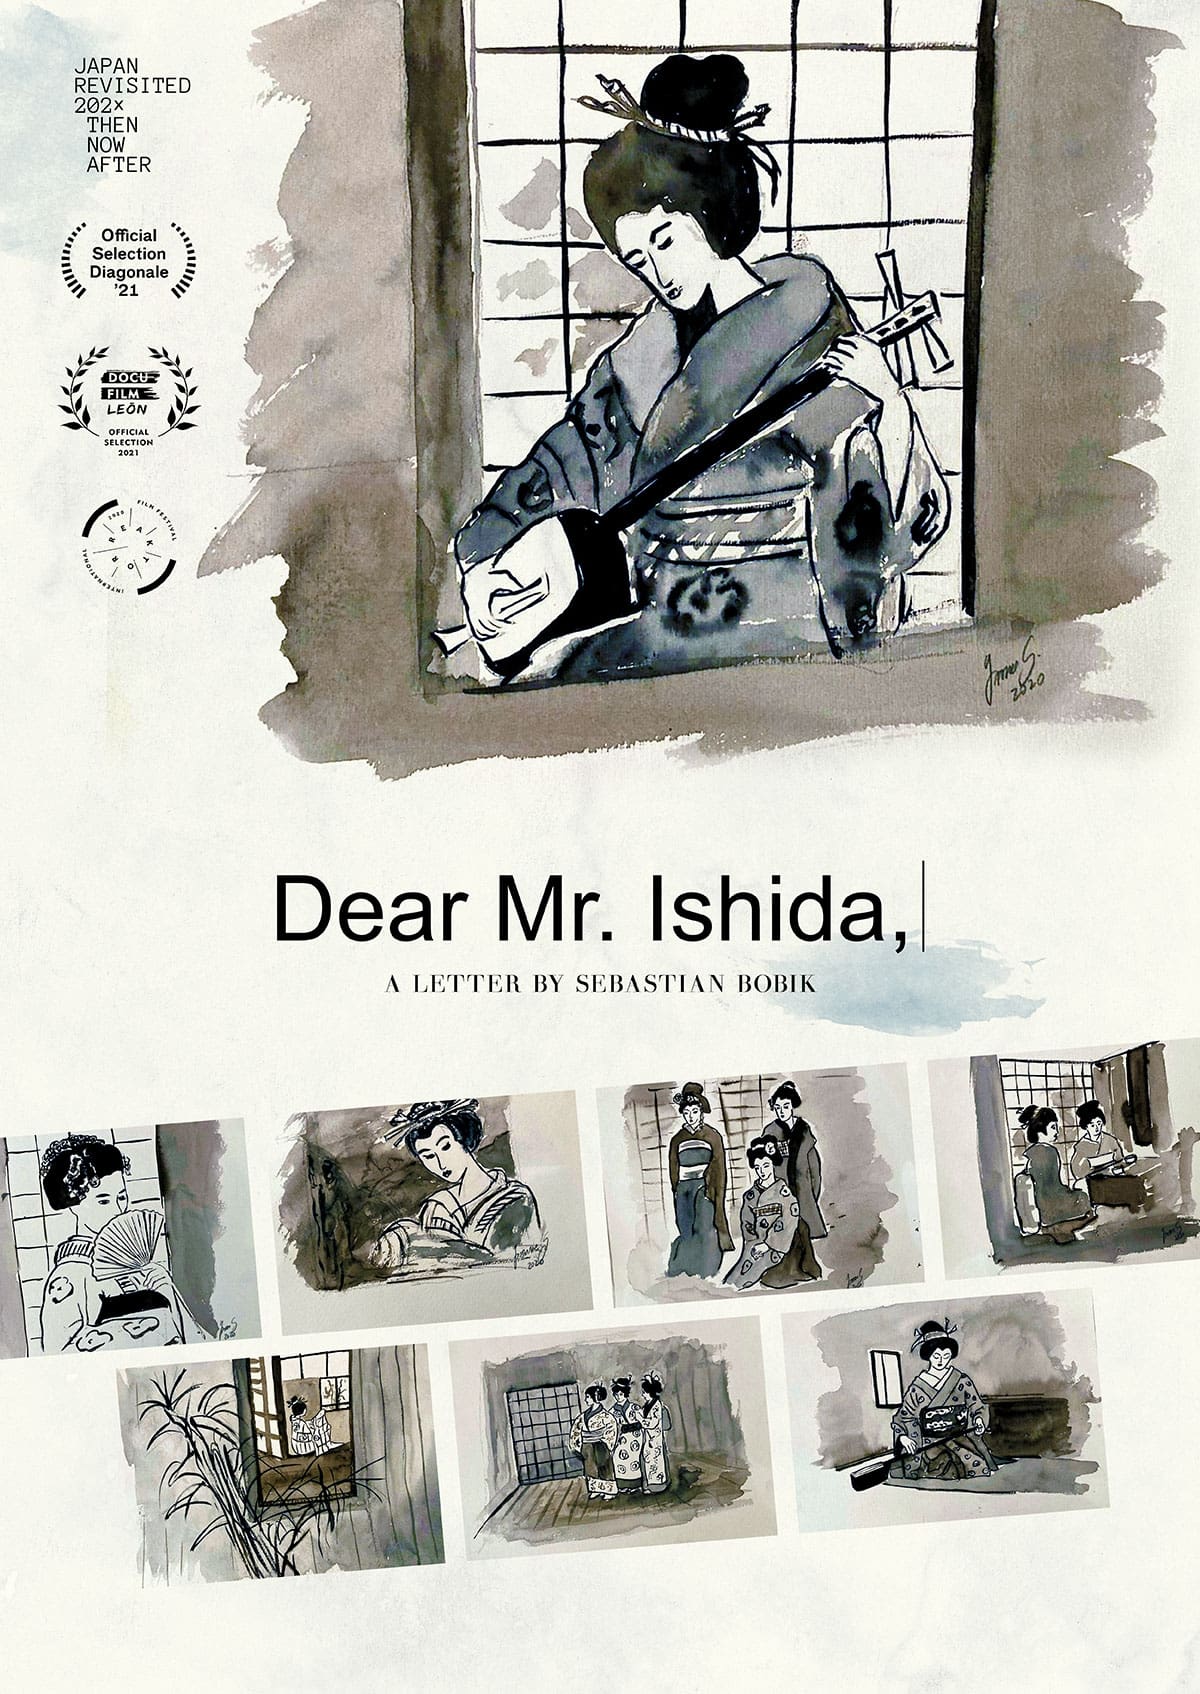 Dear Mr. Ishida